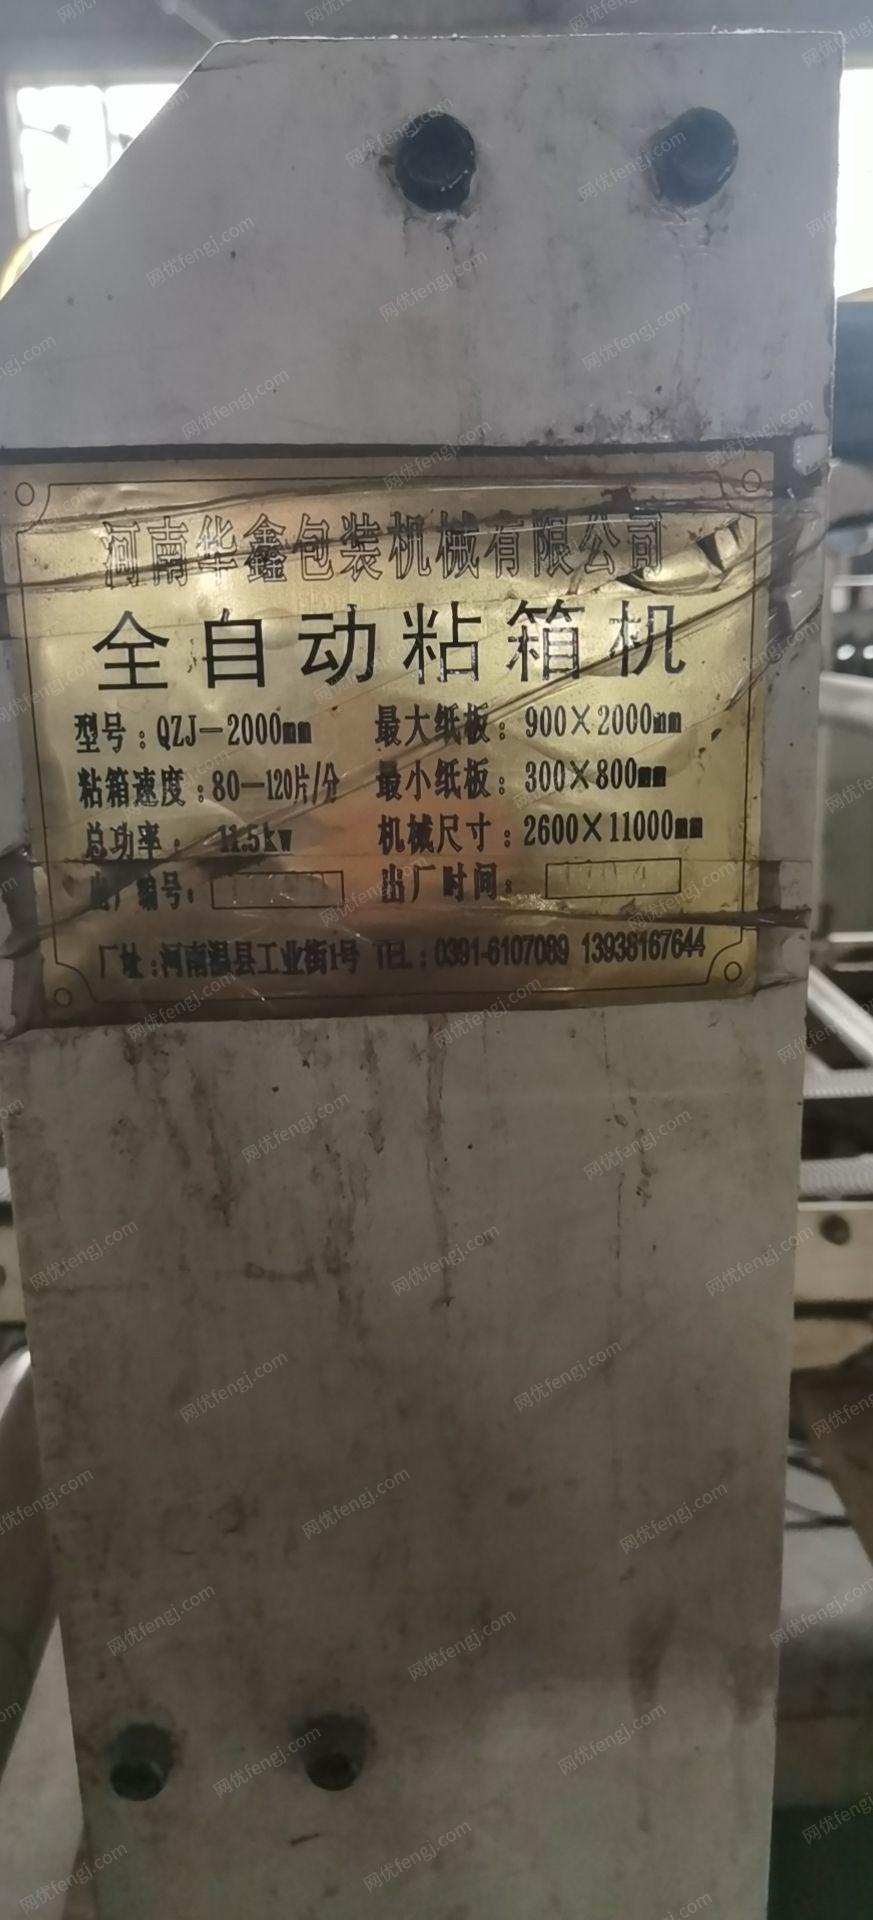 包装厂出售河南华鑫QZJ-2000全自动粘箱机1台,处理价5万,有图片